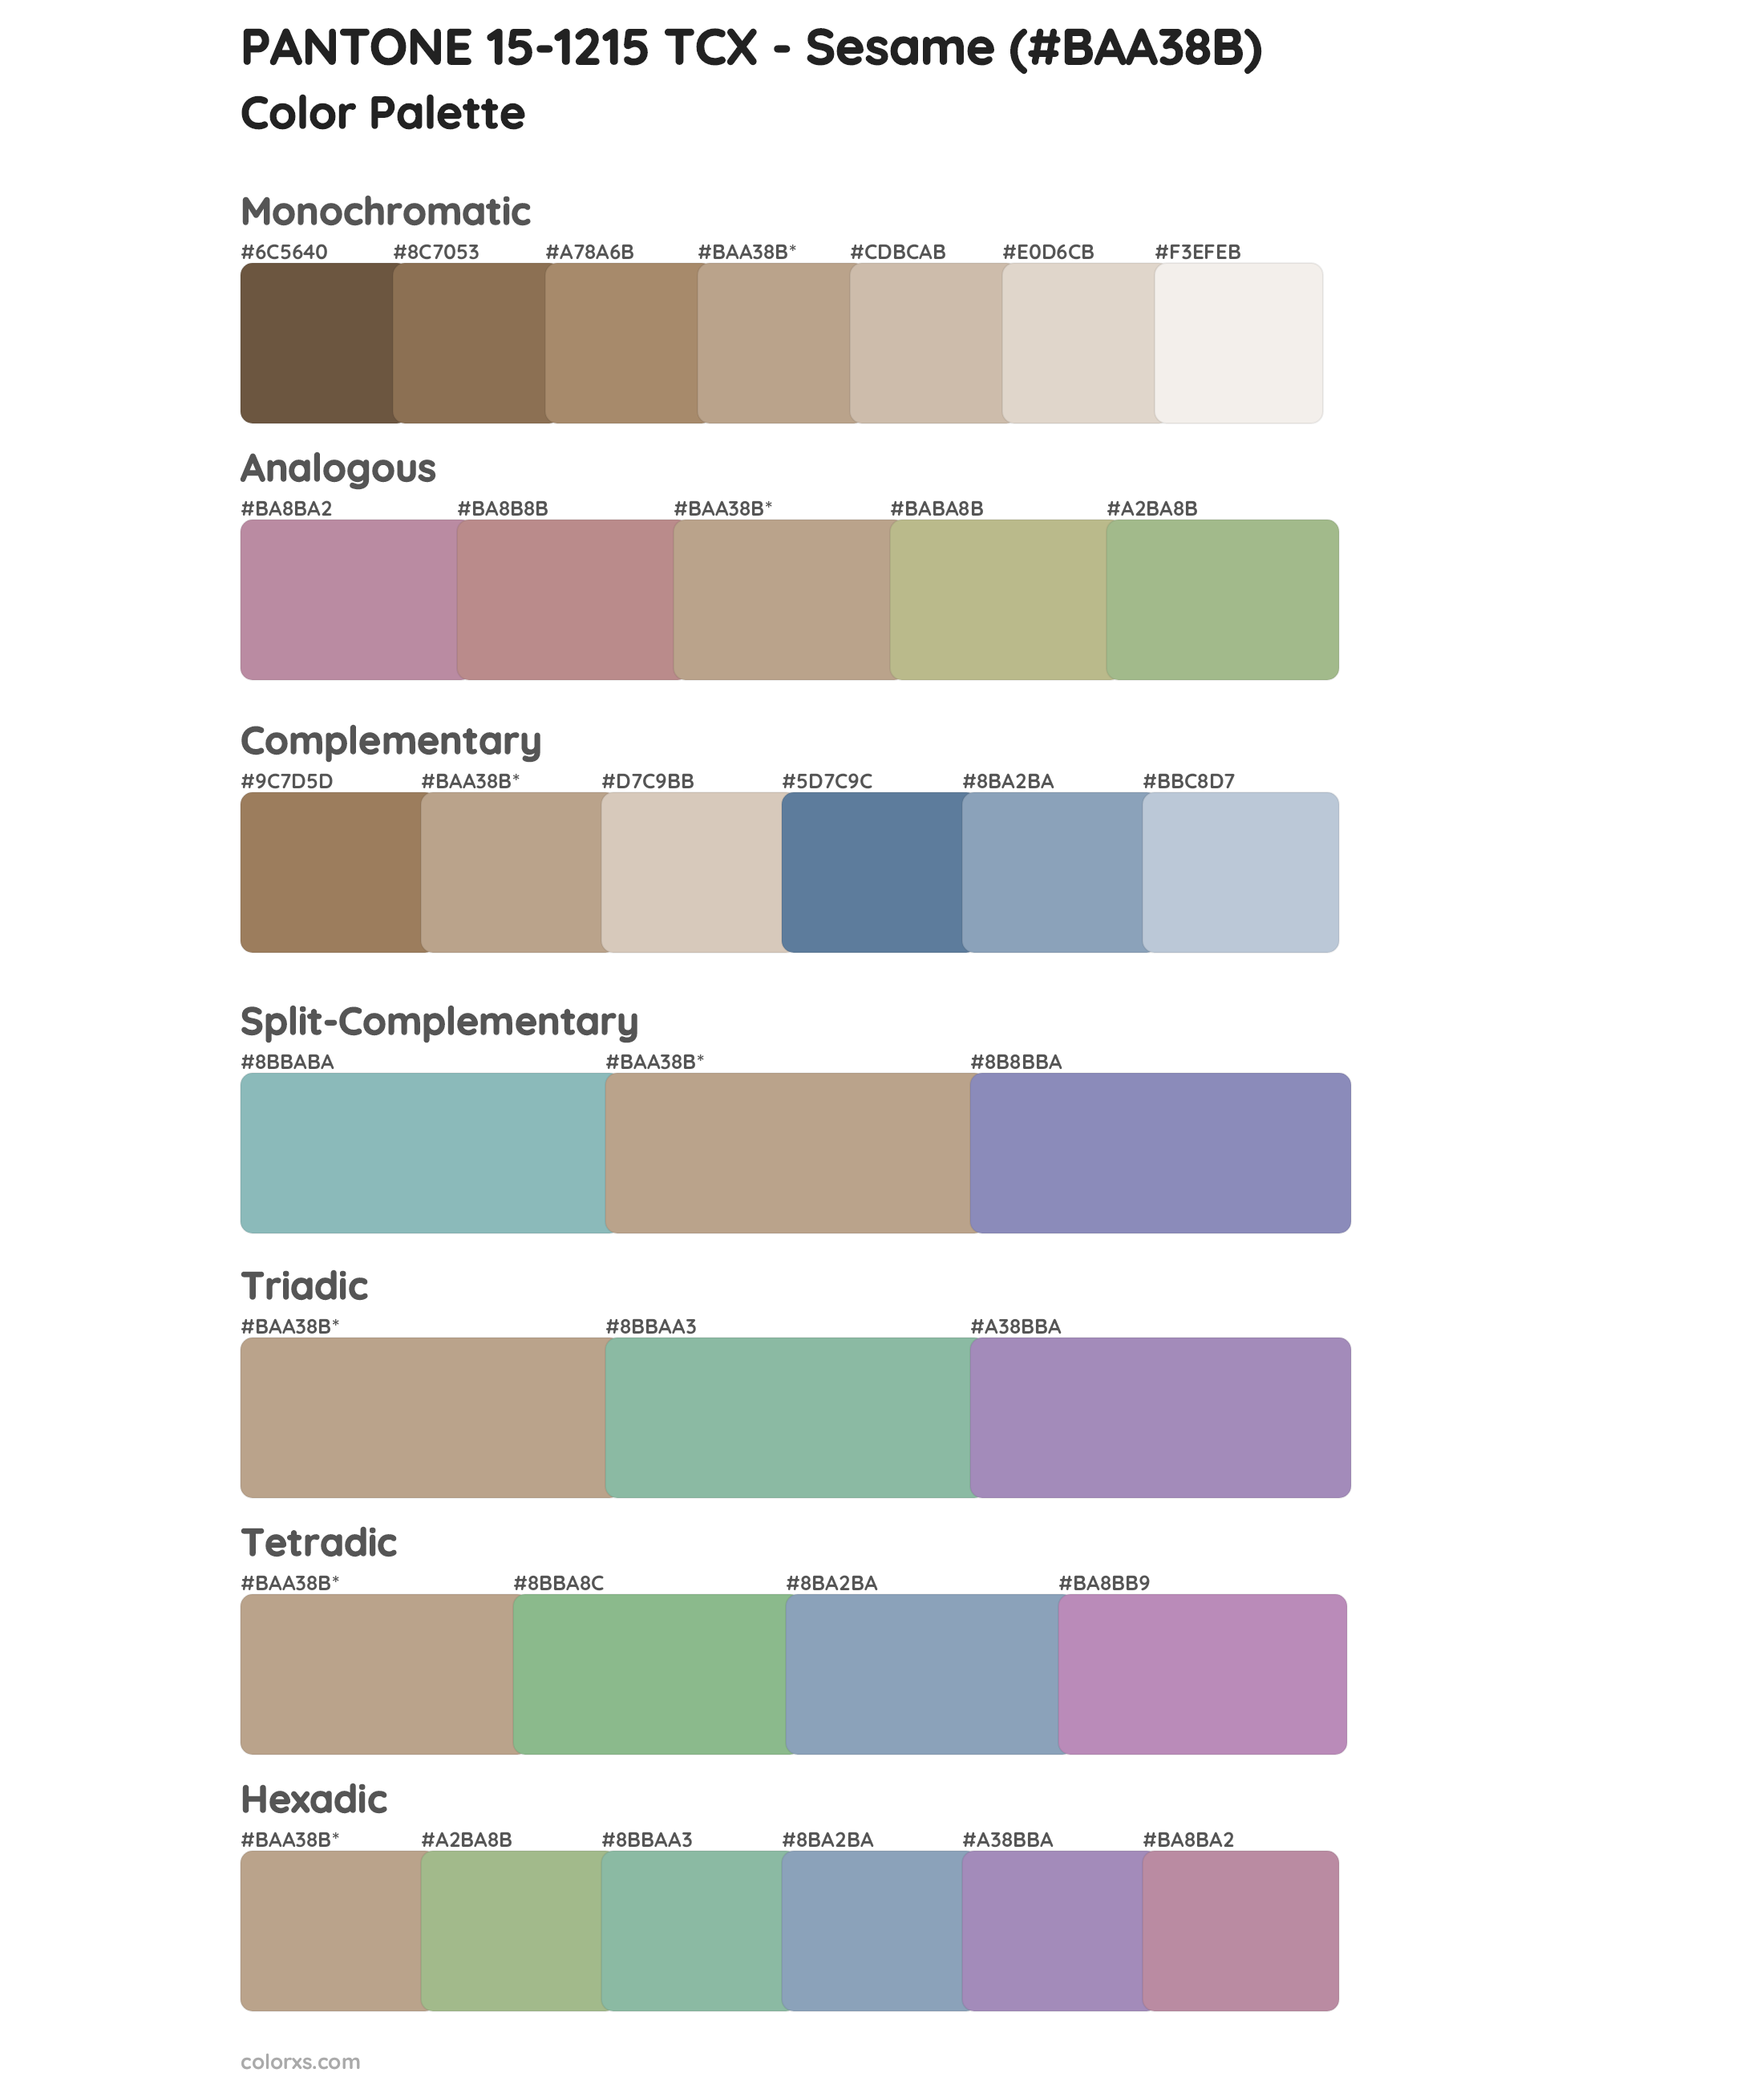 PANTONE 15-1215 TCX - Sesame Color Scheme Palettes